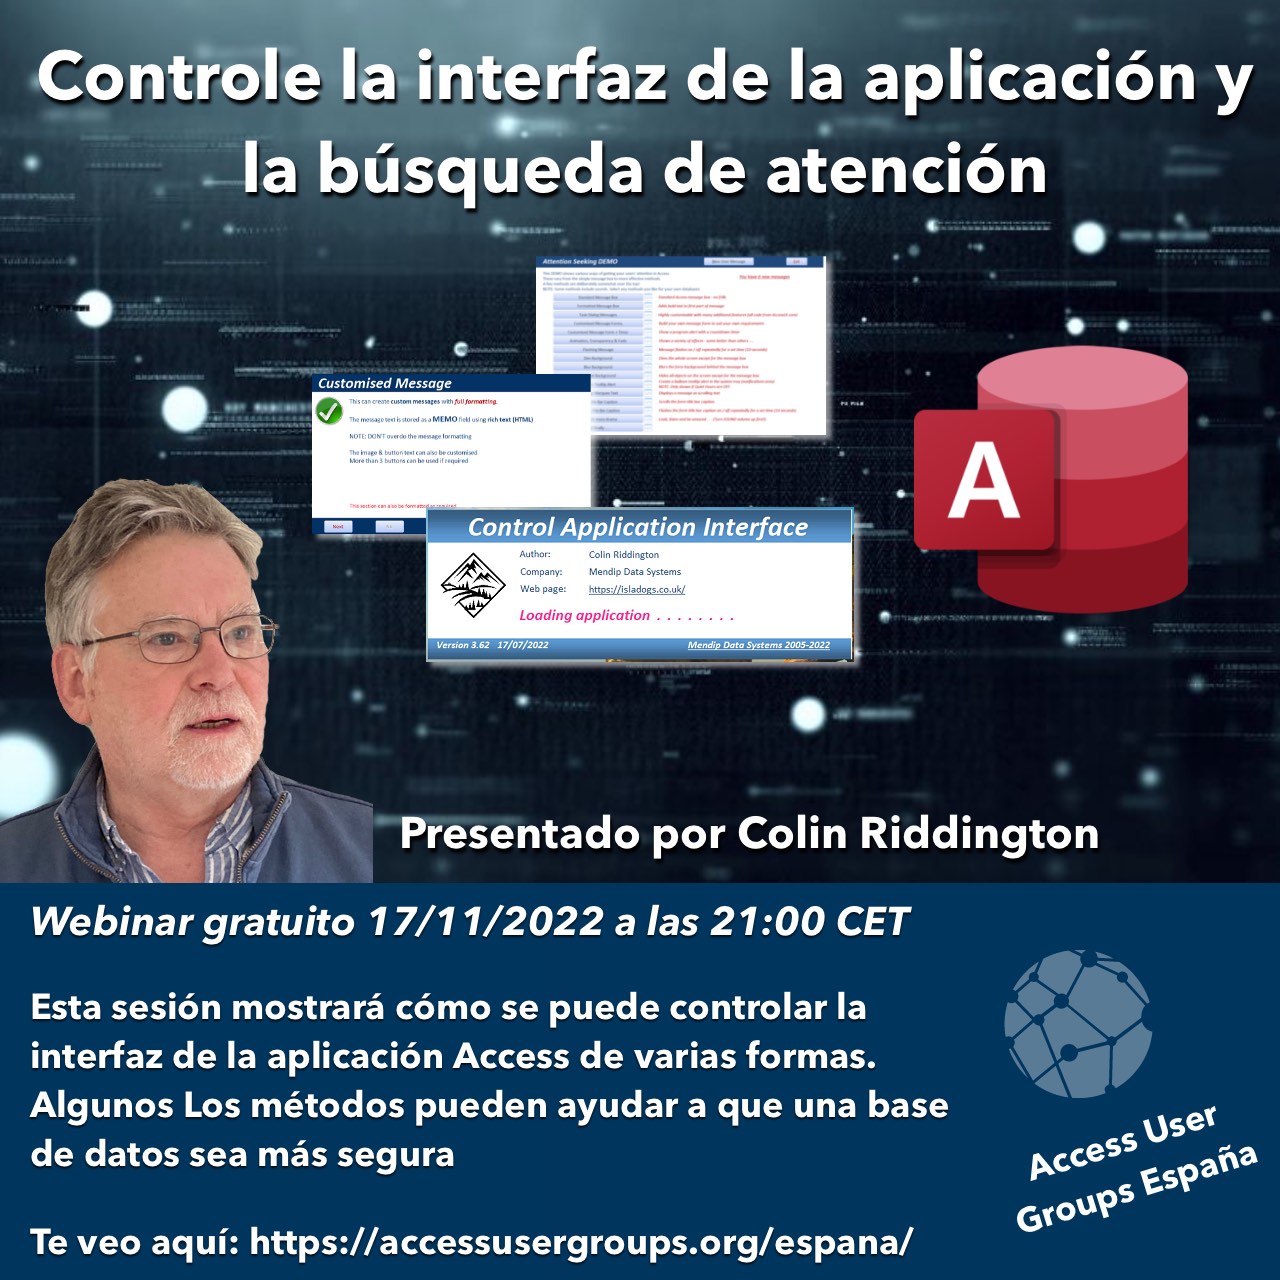 Controle la interfaz de la aplicación y la búsqueda de atención (Colin Riddington)